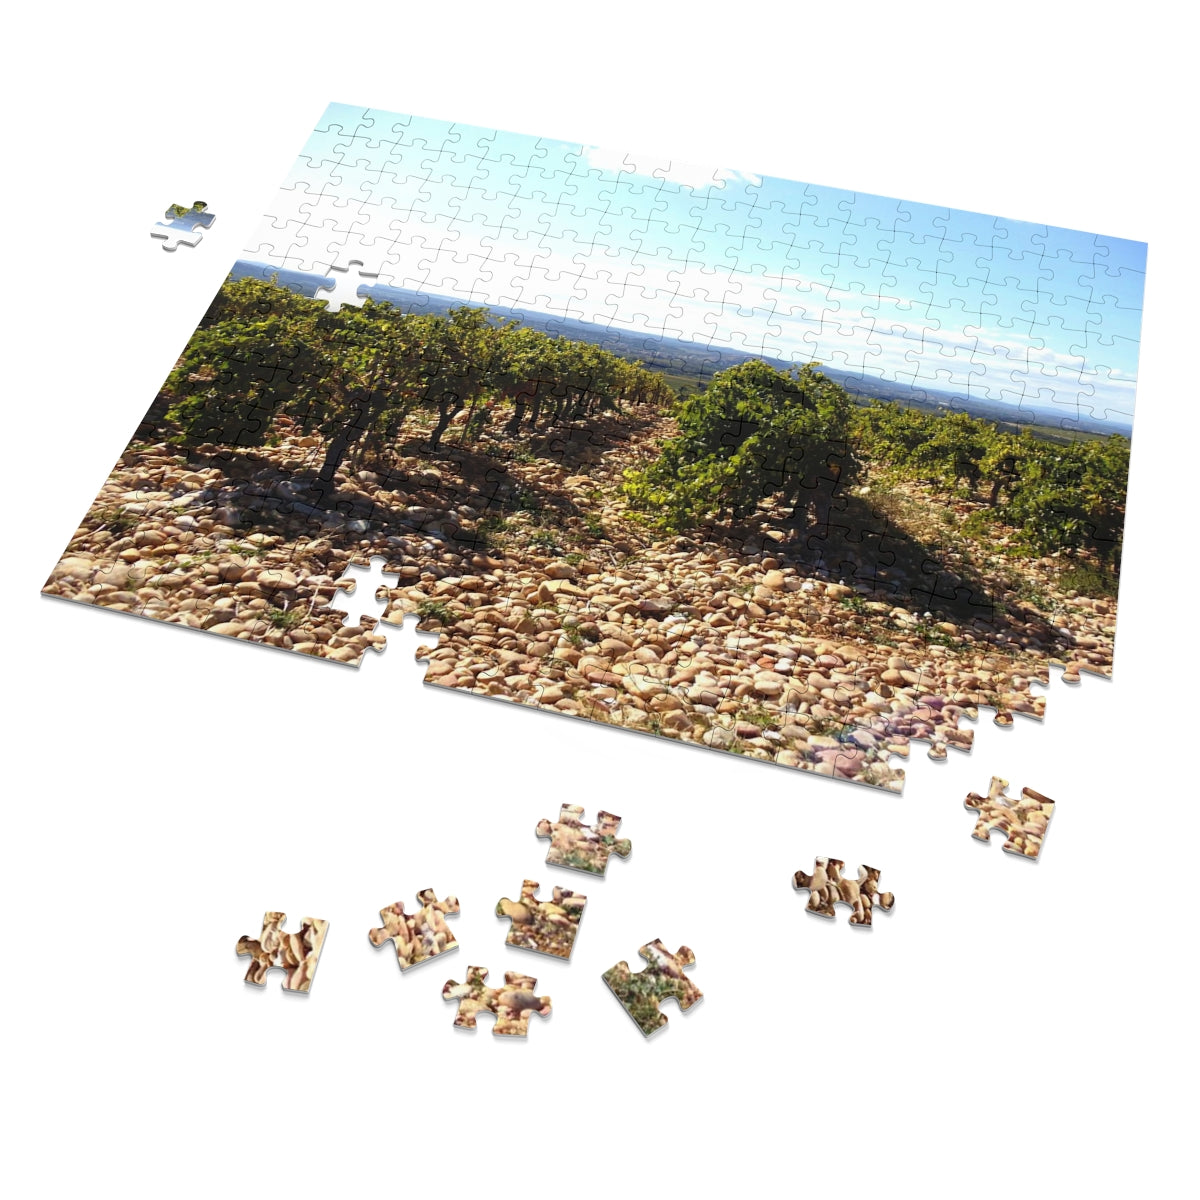 Chateauneuf du Pape Jigsaw Puzzle (30, 110, 252, 500,1000-Piece)